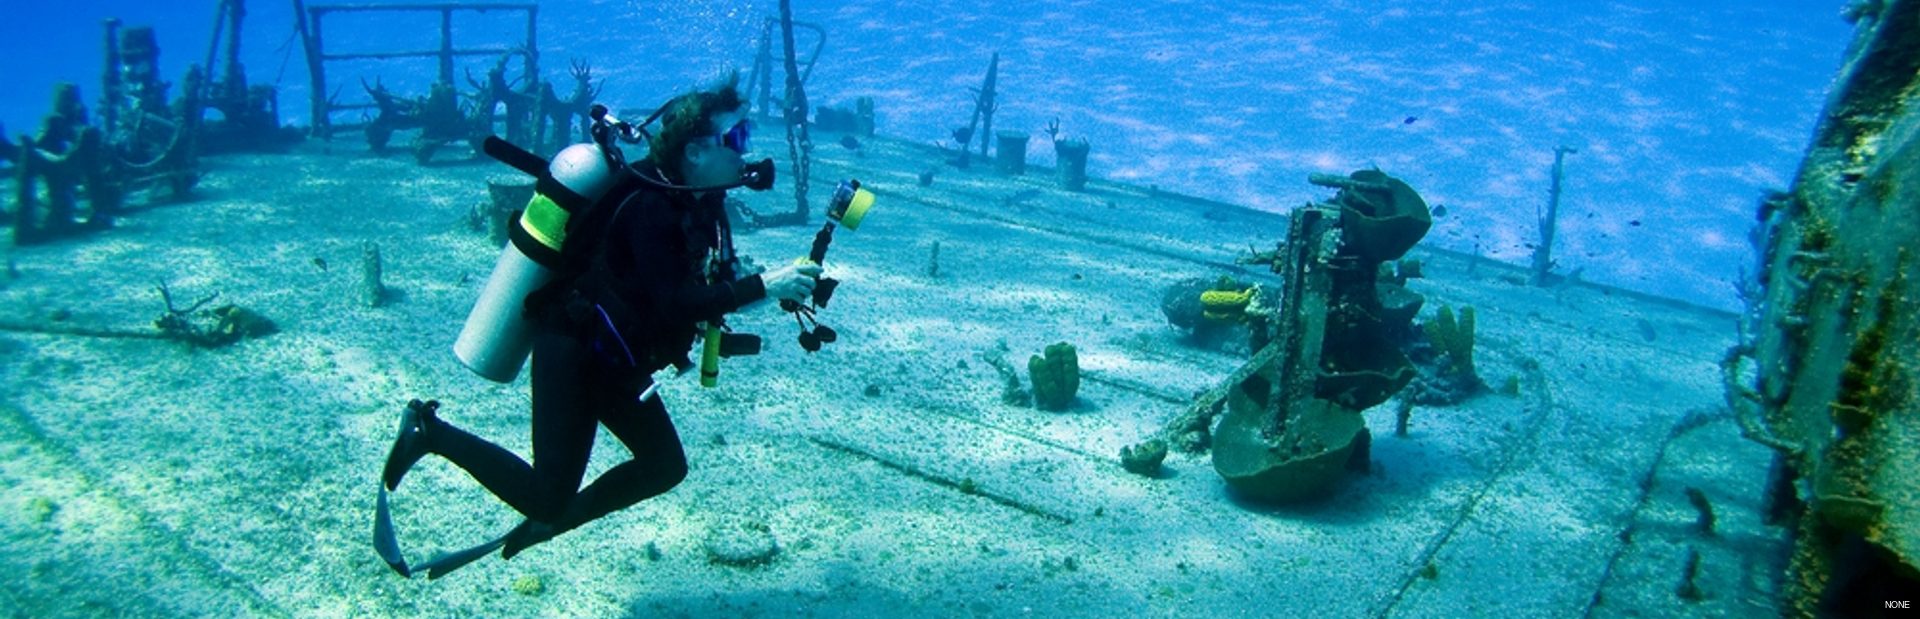 Diver on board a shipwreck